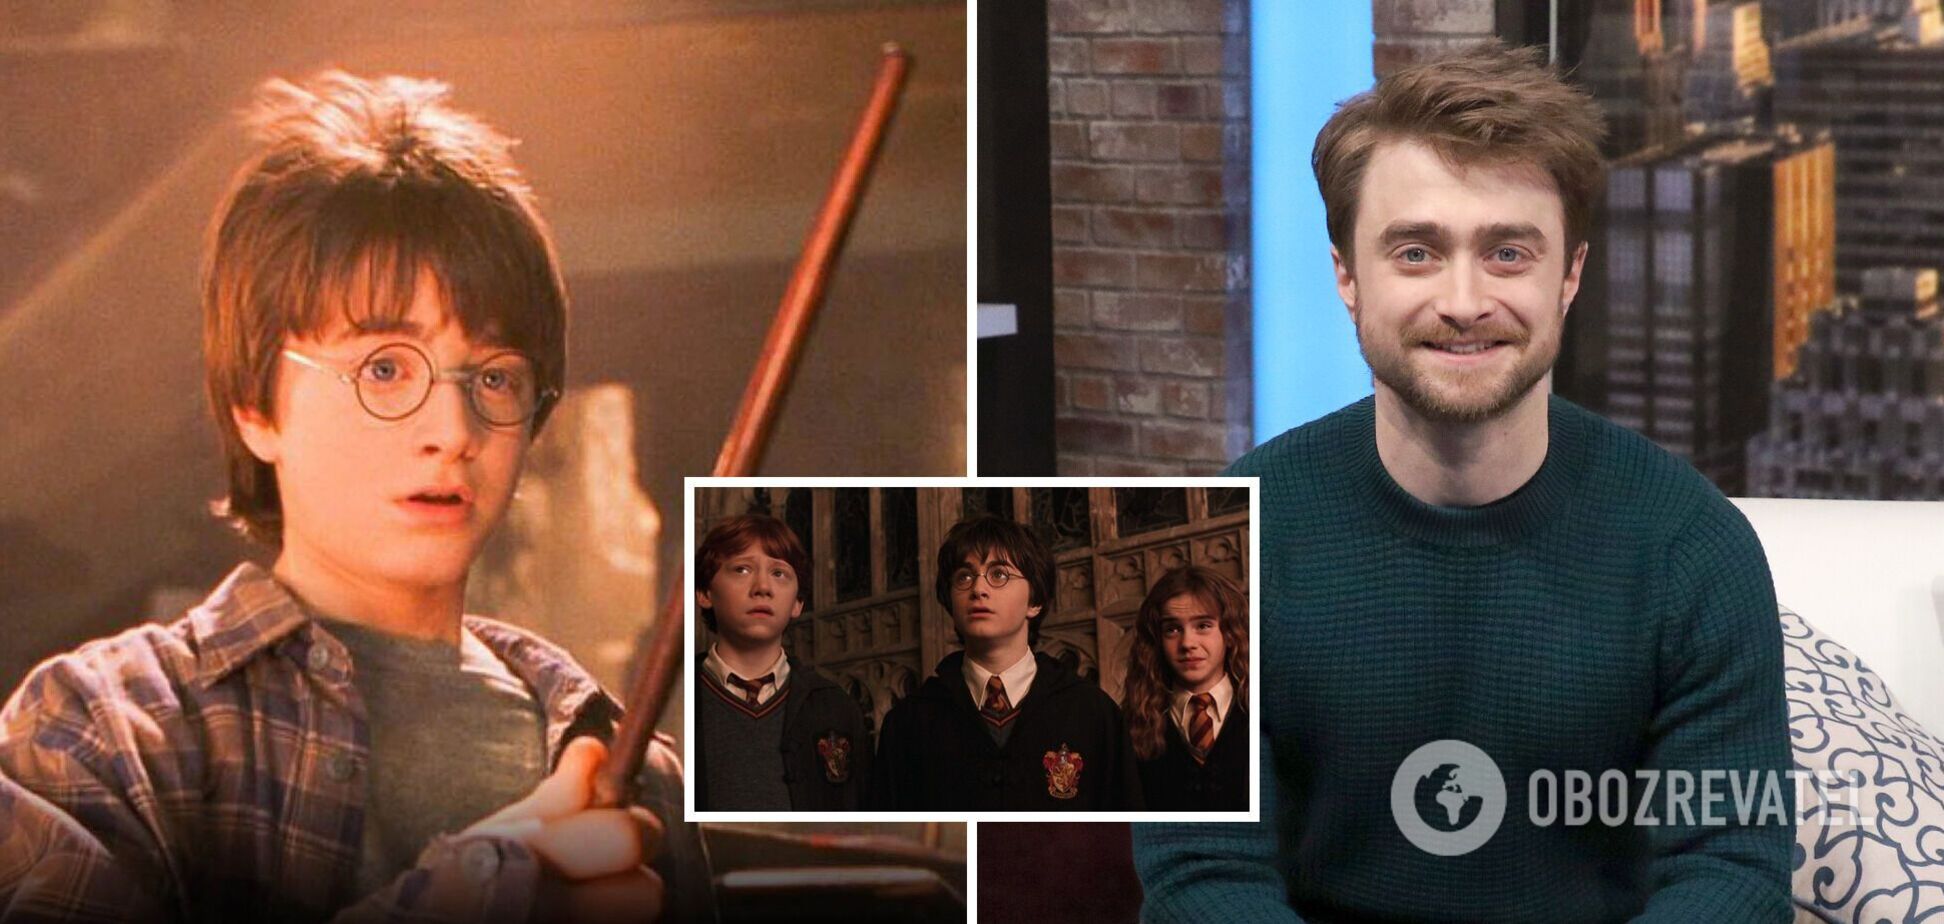 Вік бере своє! Як змінилися актори фільму 'Гаррі Поттер' за 22 роки. Фото тоді і зараз